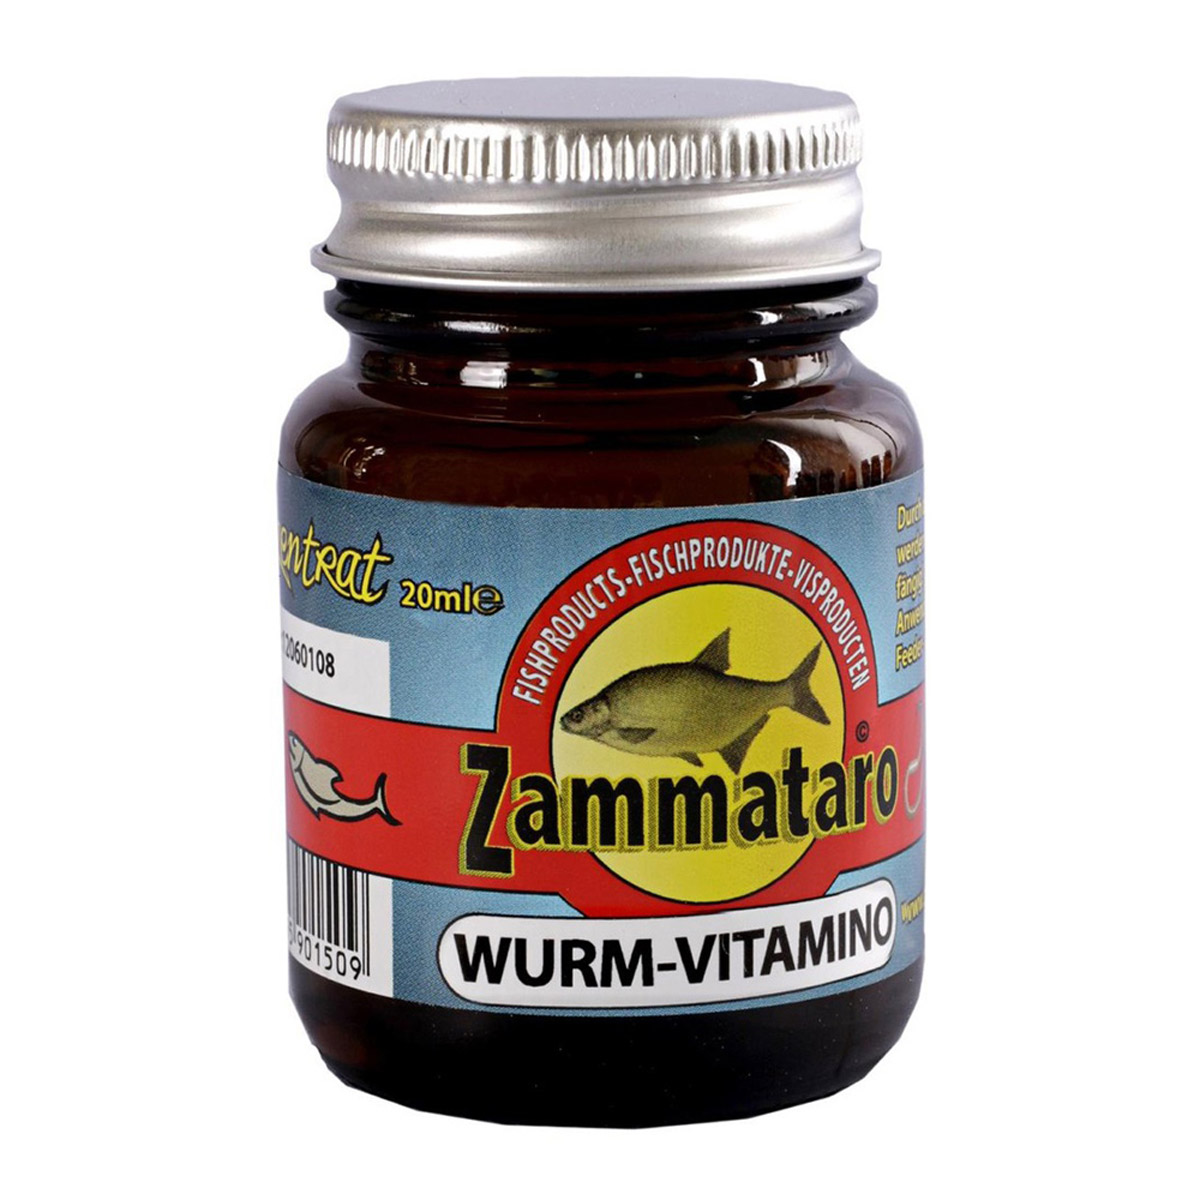 Zammataro Worm Vitamo Dompel 20 ml